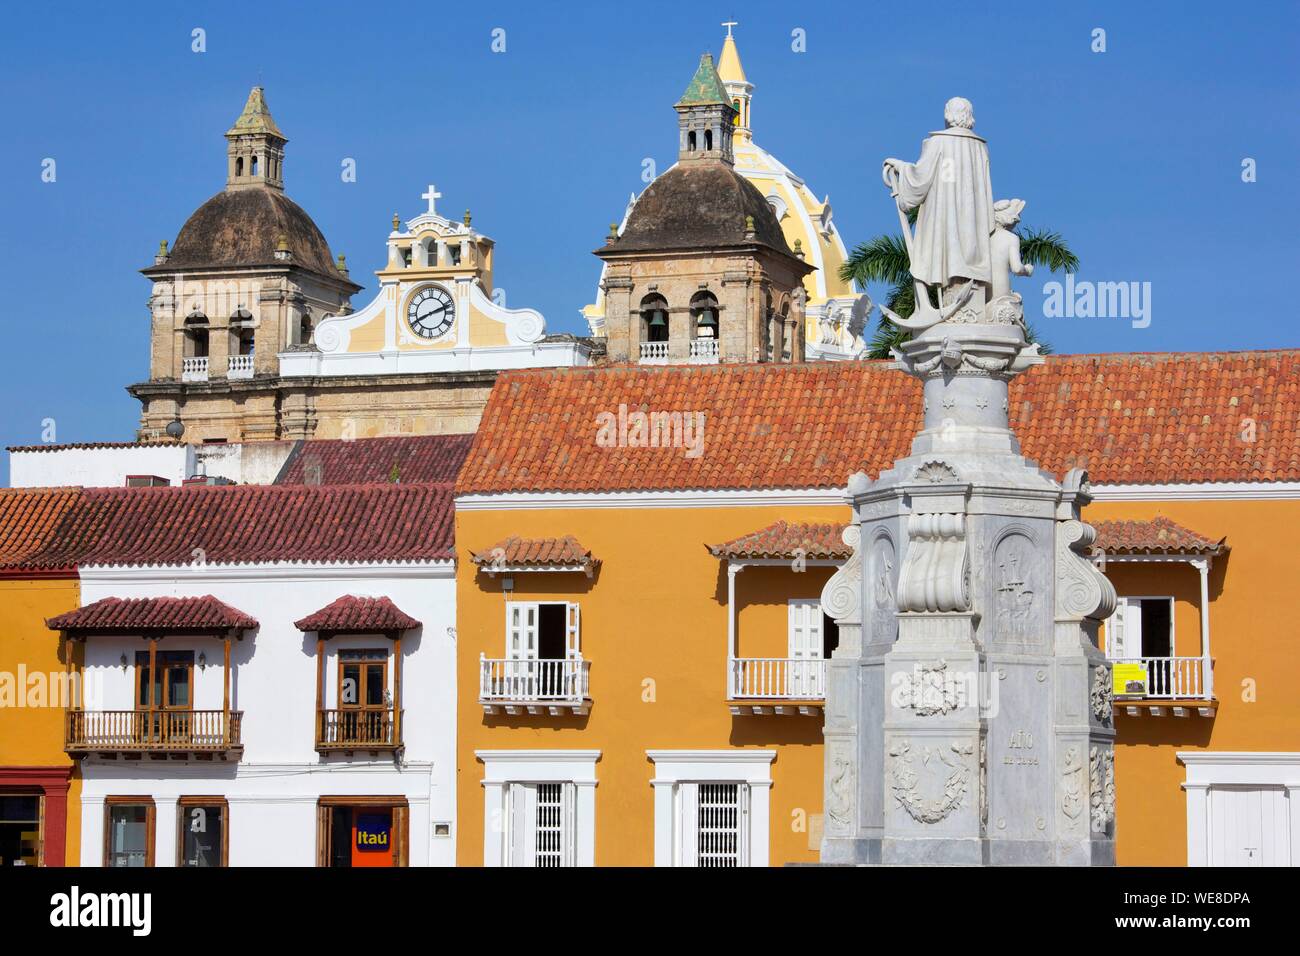 La Colombia, Dipartimento di Bolivar, Cartagena, elencati come patrimonio mondiale dall' UNESCO, facciate coloniale della Plaza de San Pedro Claver situato nel centro storico della città Foto Stock